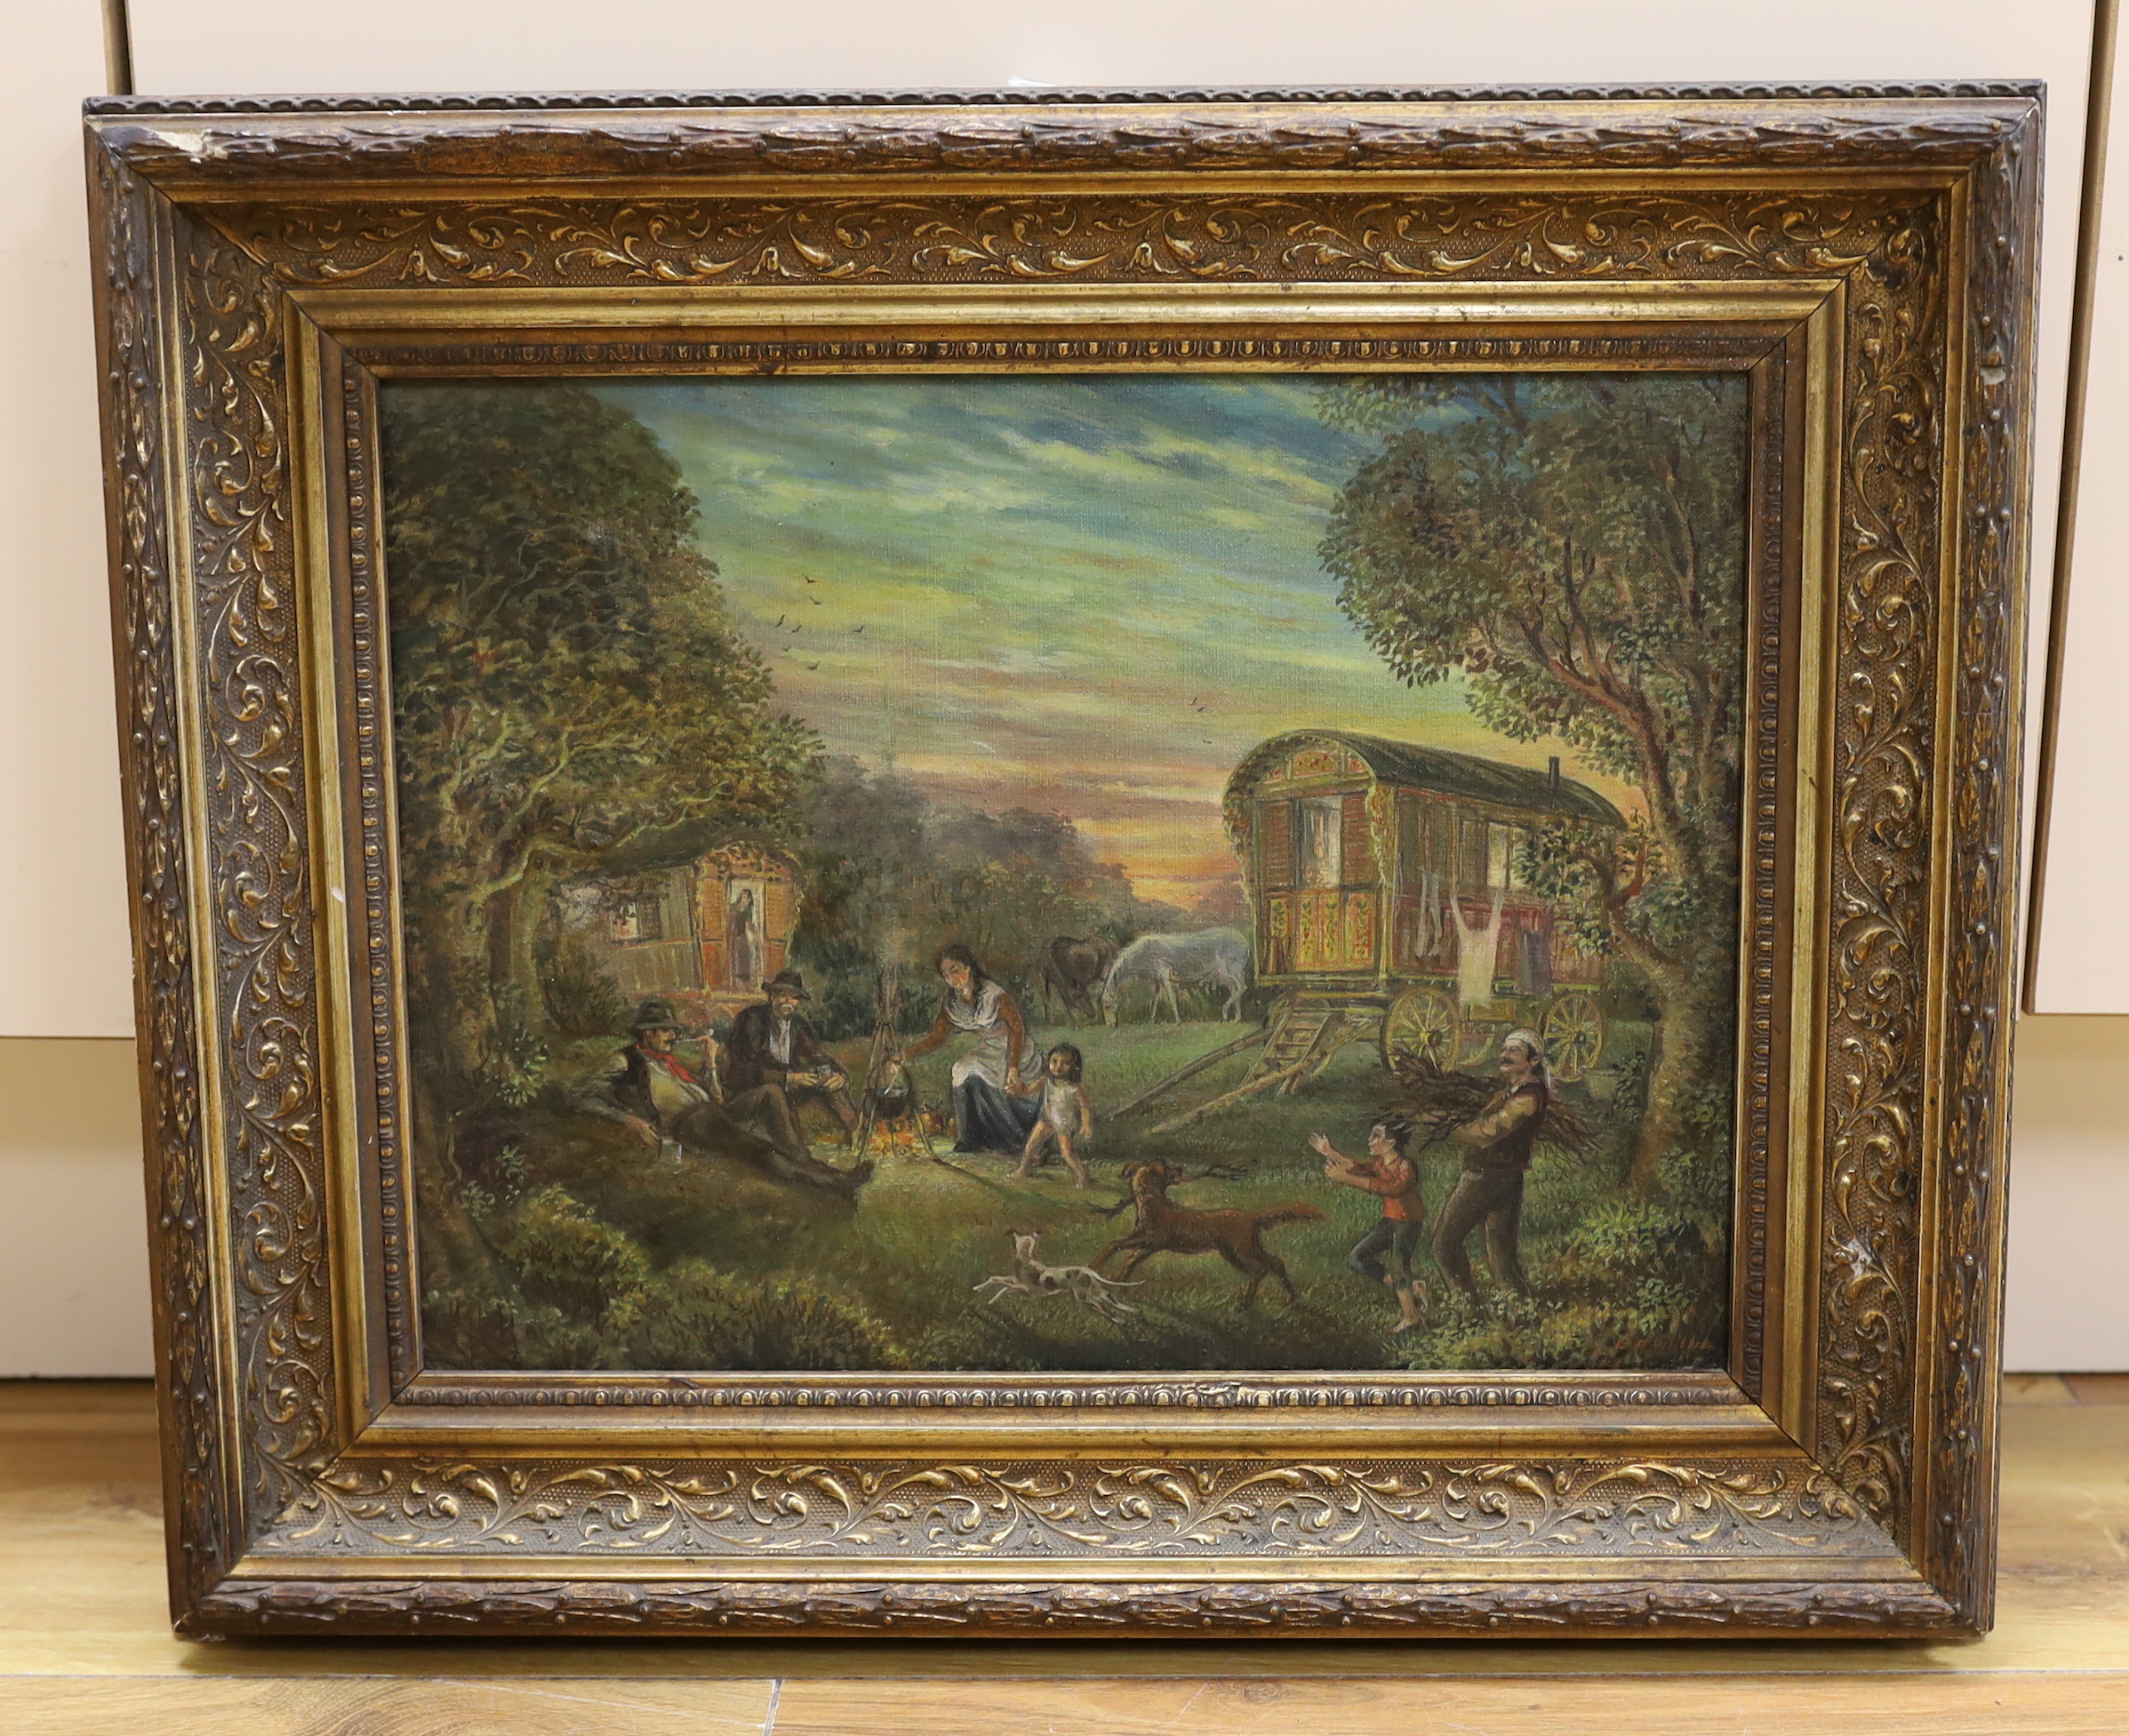 20th century English School, oil on canvas, Gypsy encampment, indistinctly signed, 34 x 26cm